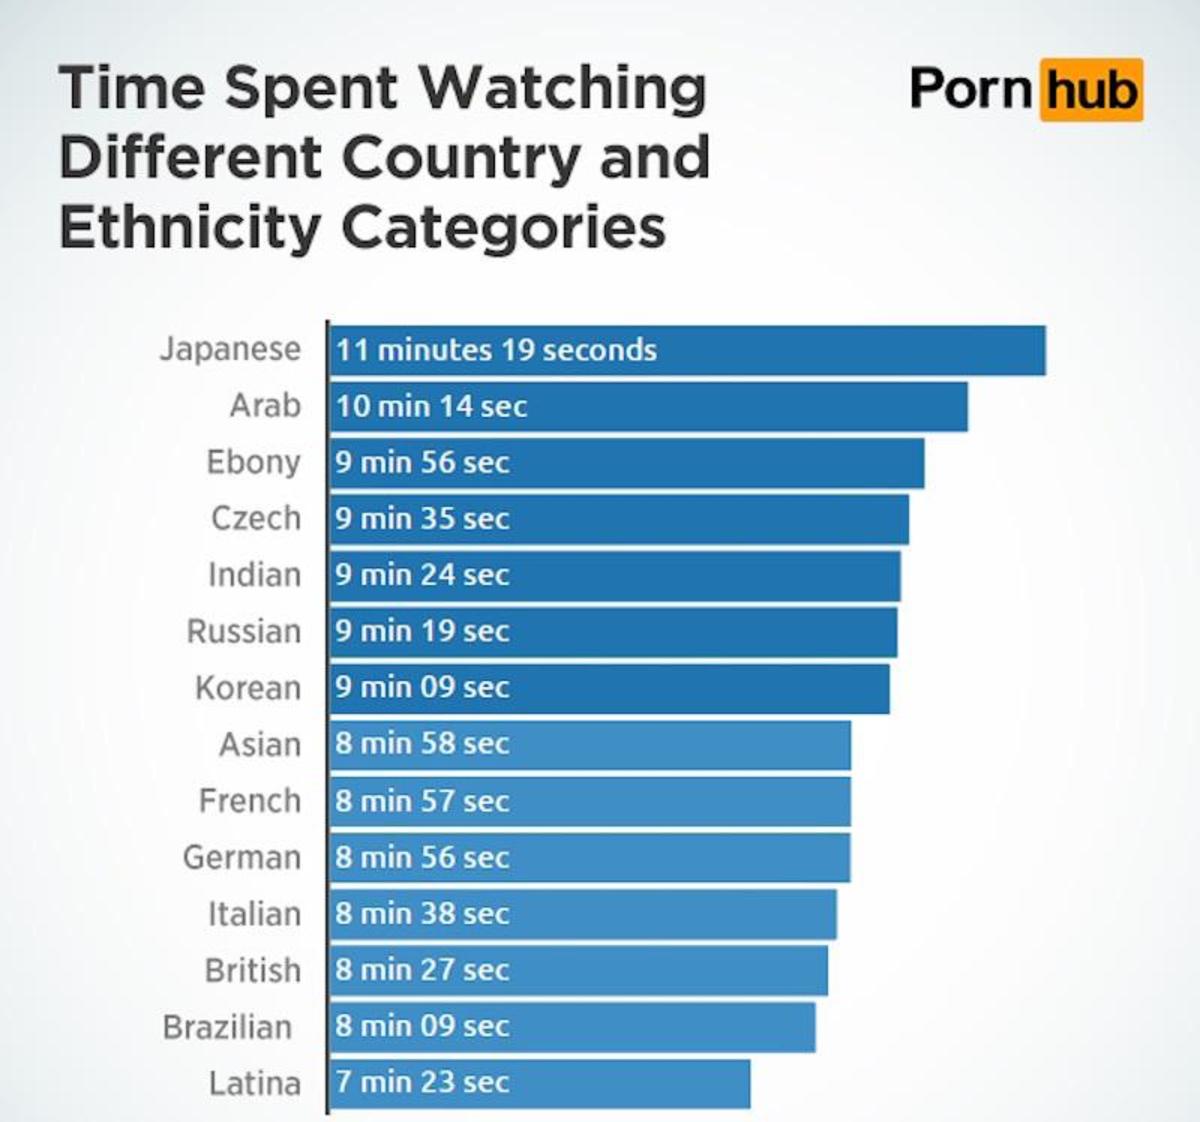 Porno categories